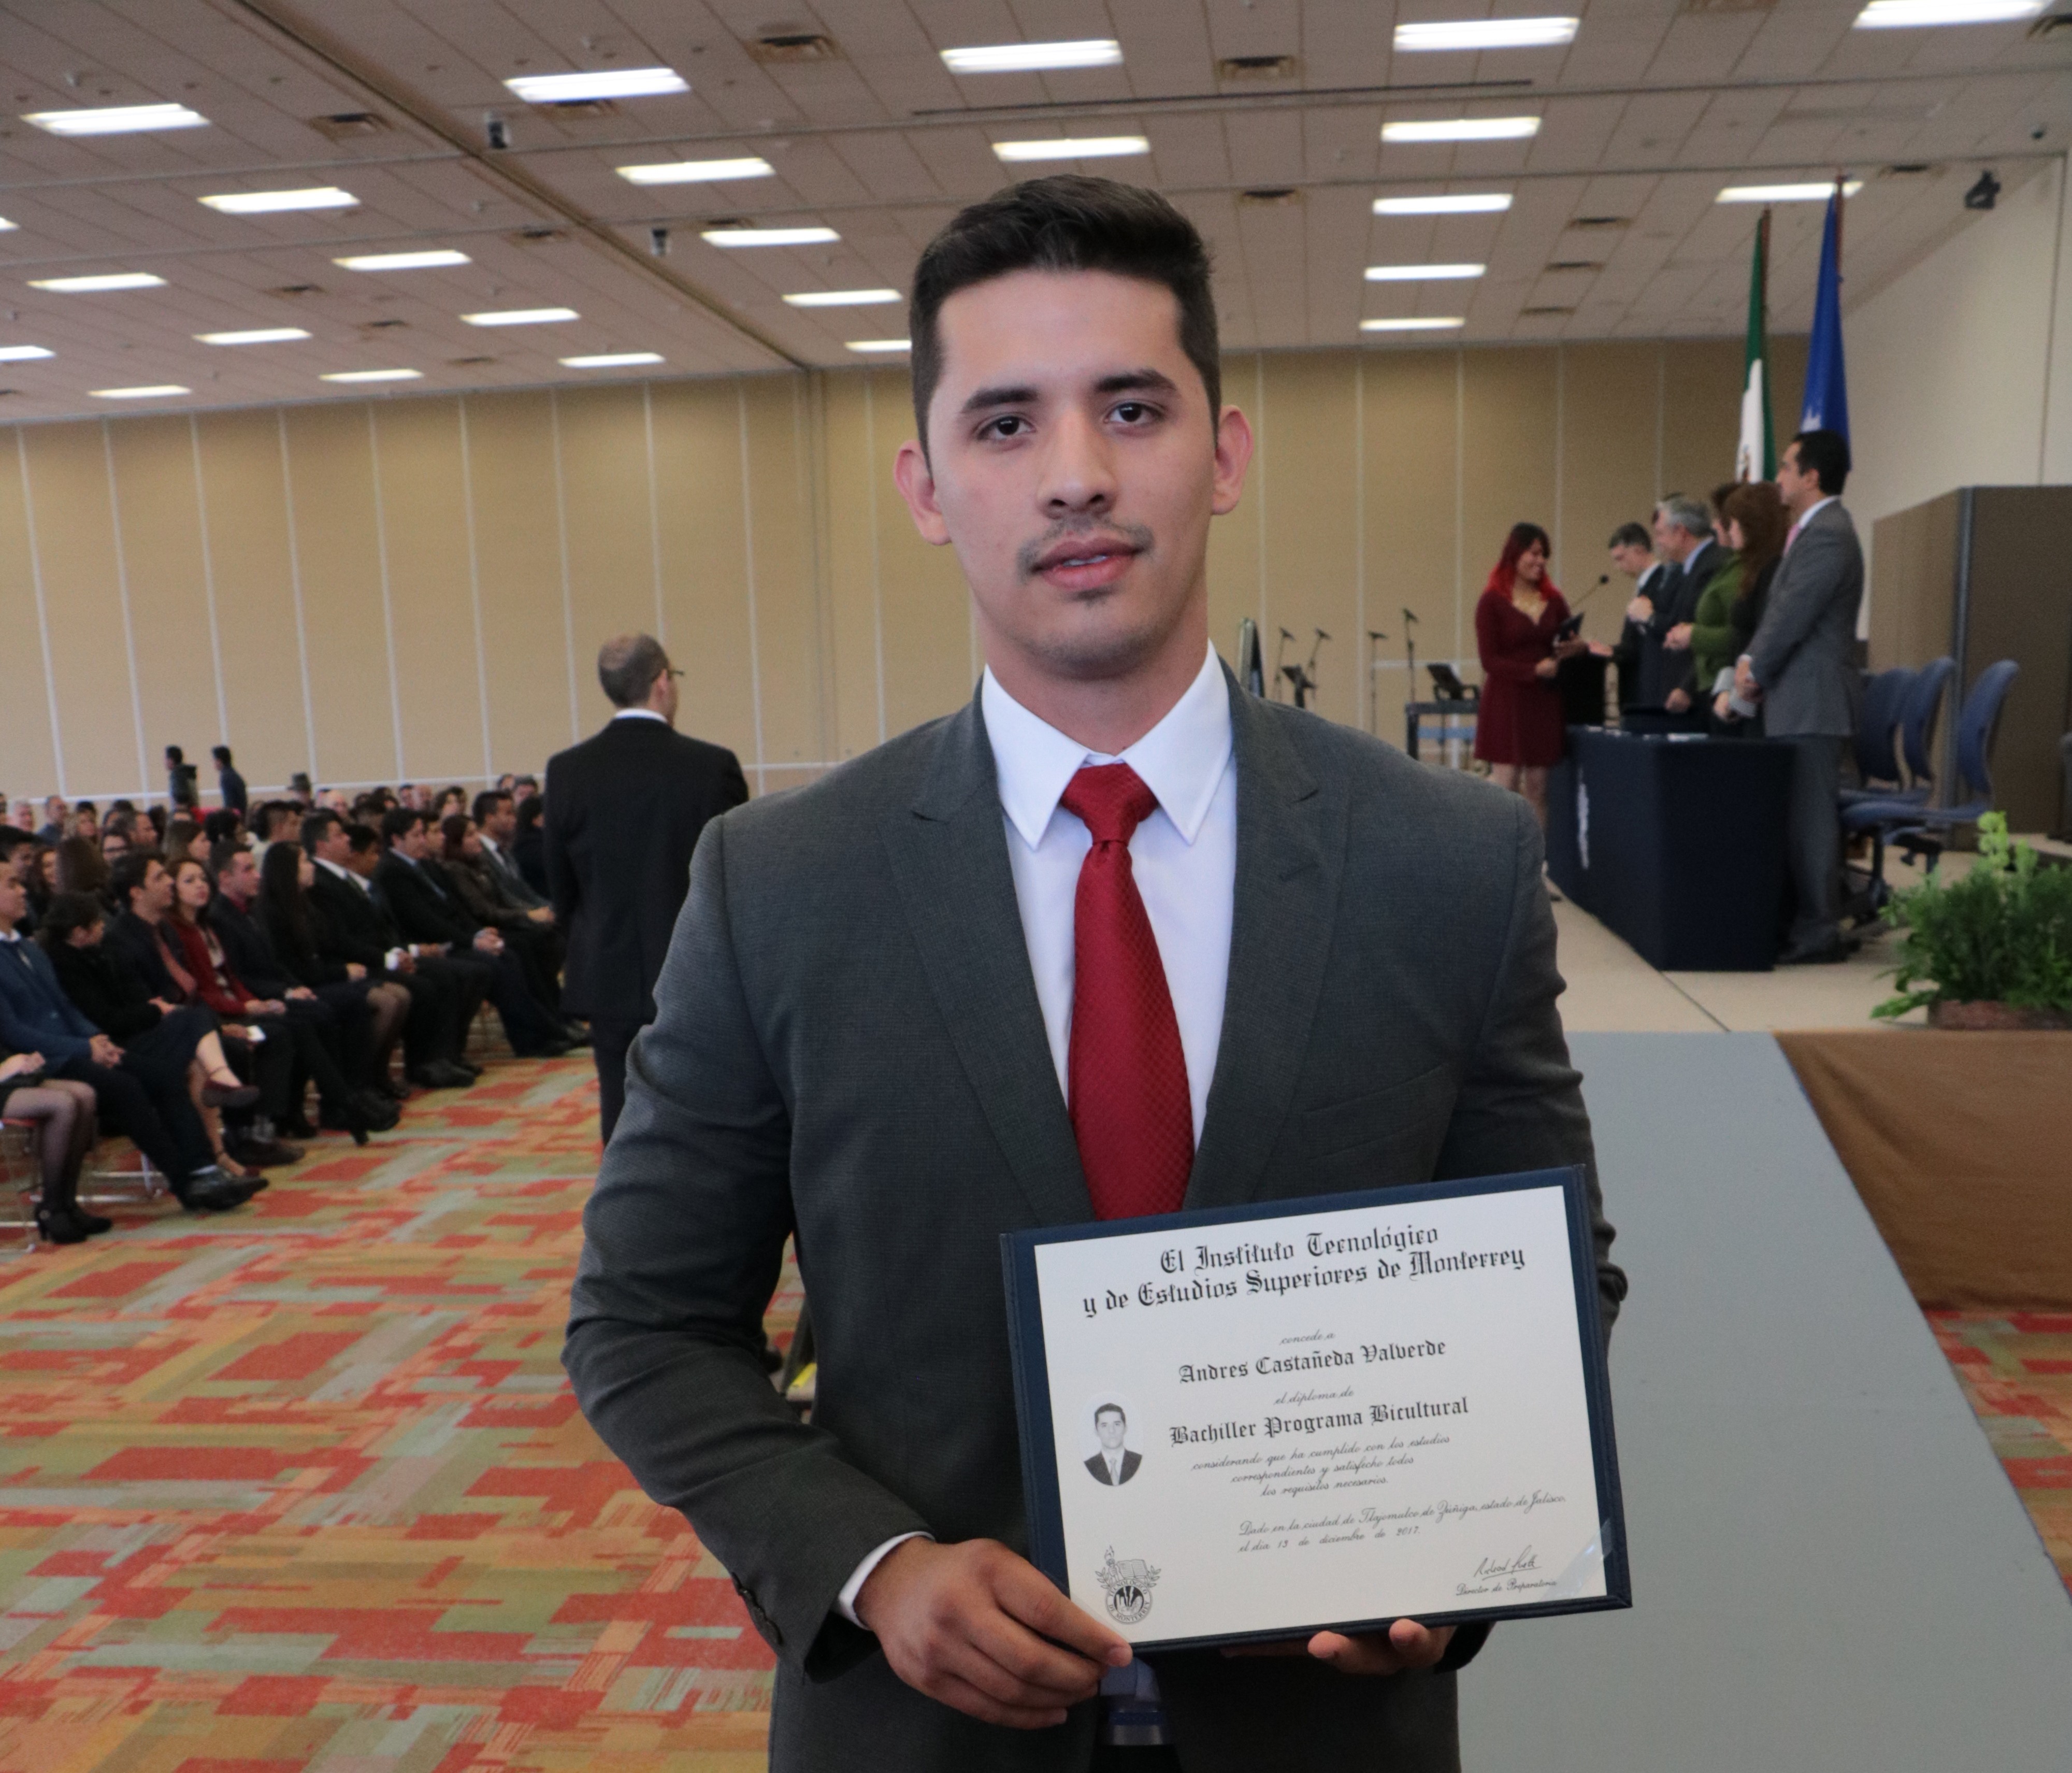 Graduación PrepaTec Guadalajara, diciembre 2017.